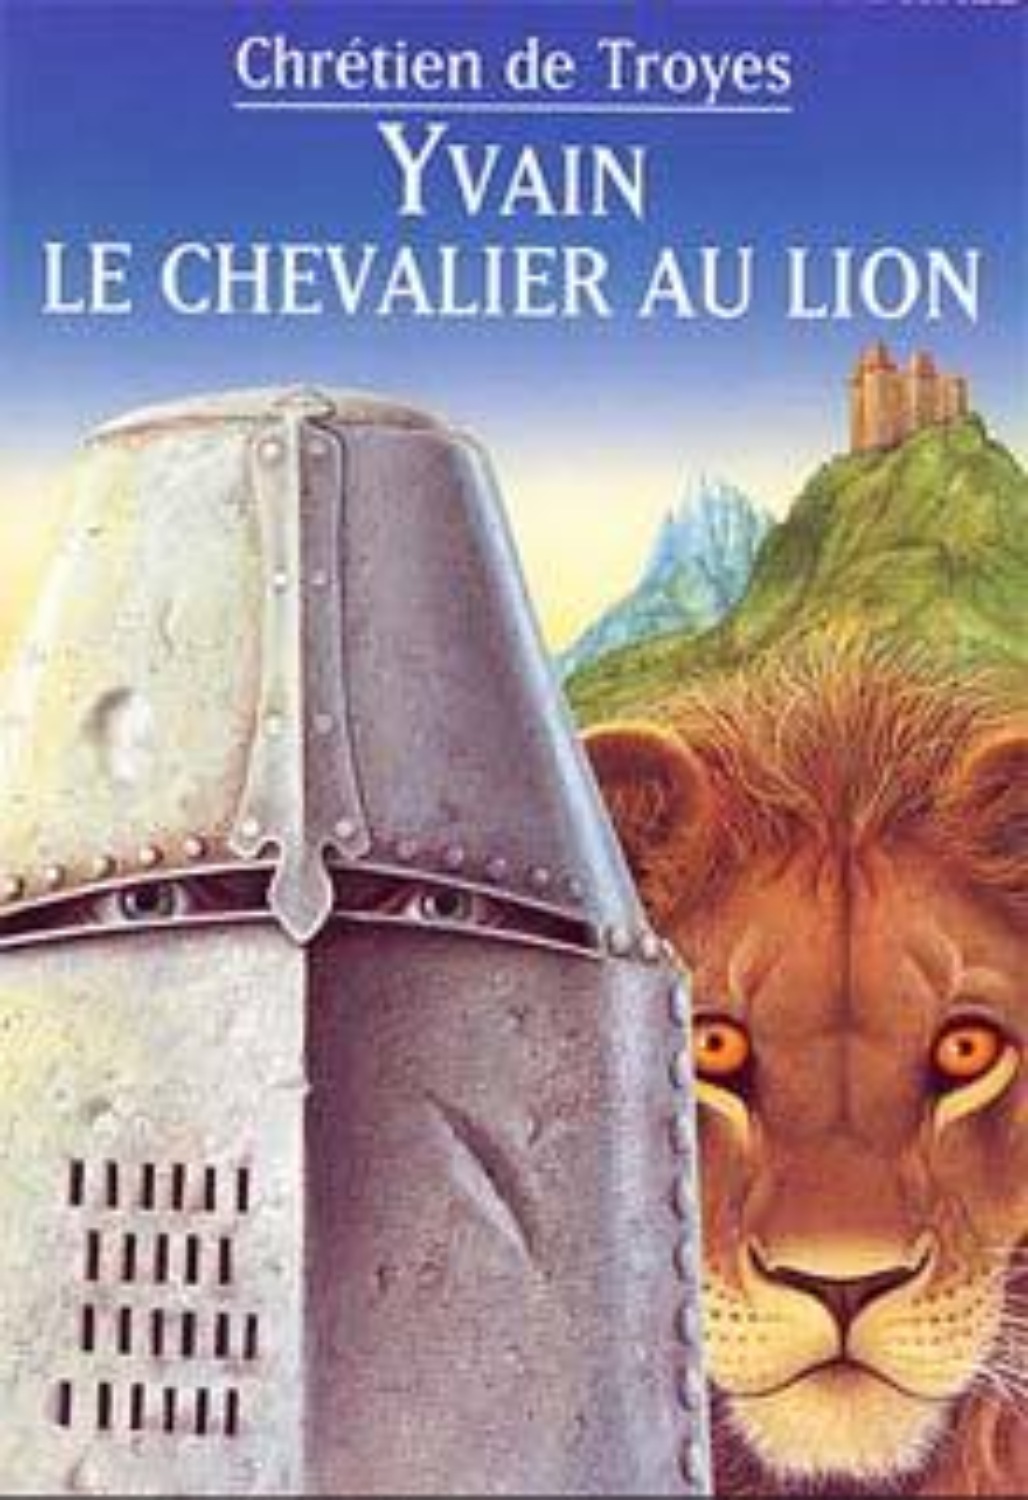 Книга со львом. Ивэйн, или рыцарь со львом Кретьен де Труа книга. Кретьен де Труа рыцарь со львом. Ивейн или рыцарь Льва Труа. Ивэйн или рыцарь со львом.